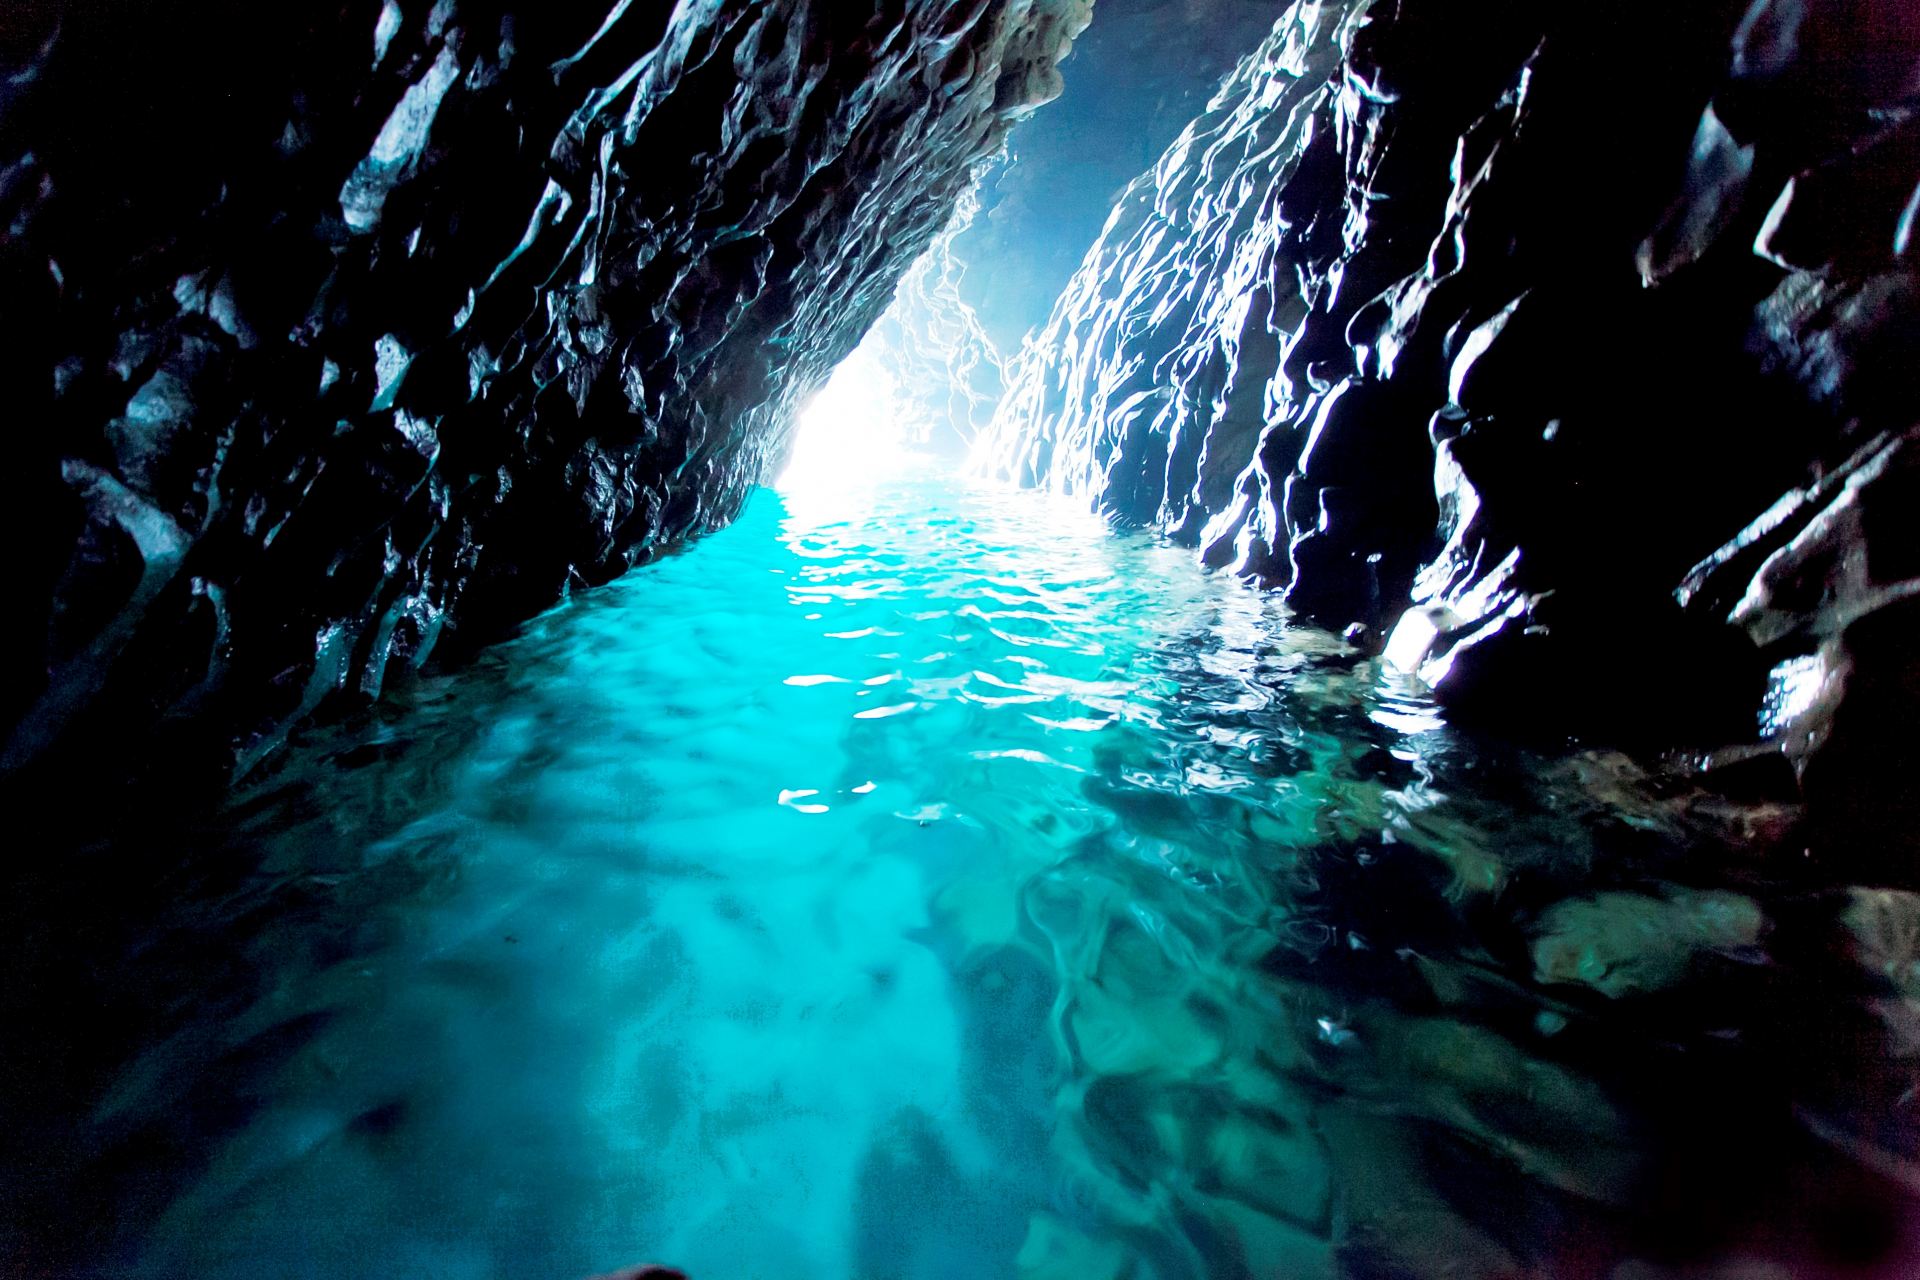 迷人而奇幻的“青之洞窟”。旁边还有以渔民神话命名的“爱情洞”，来到这里会加深一个人的爱情。